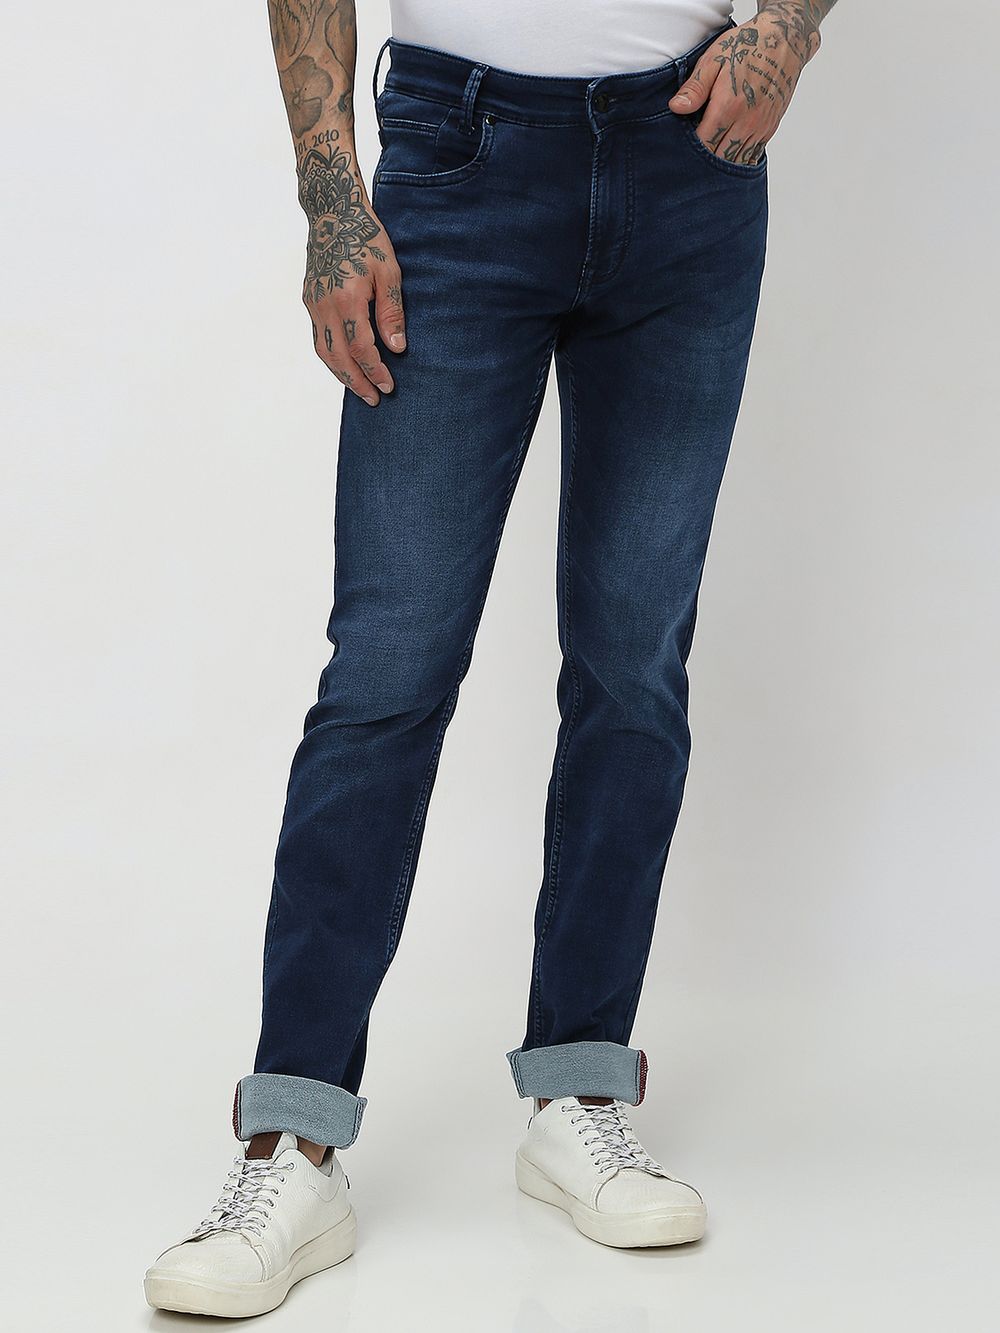 Dark Indigo Blue Super Slim Fit Flyweight Jeans